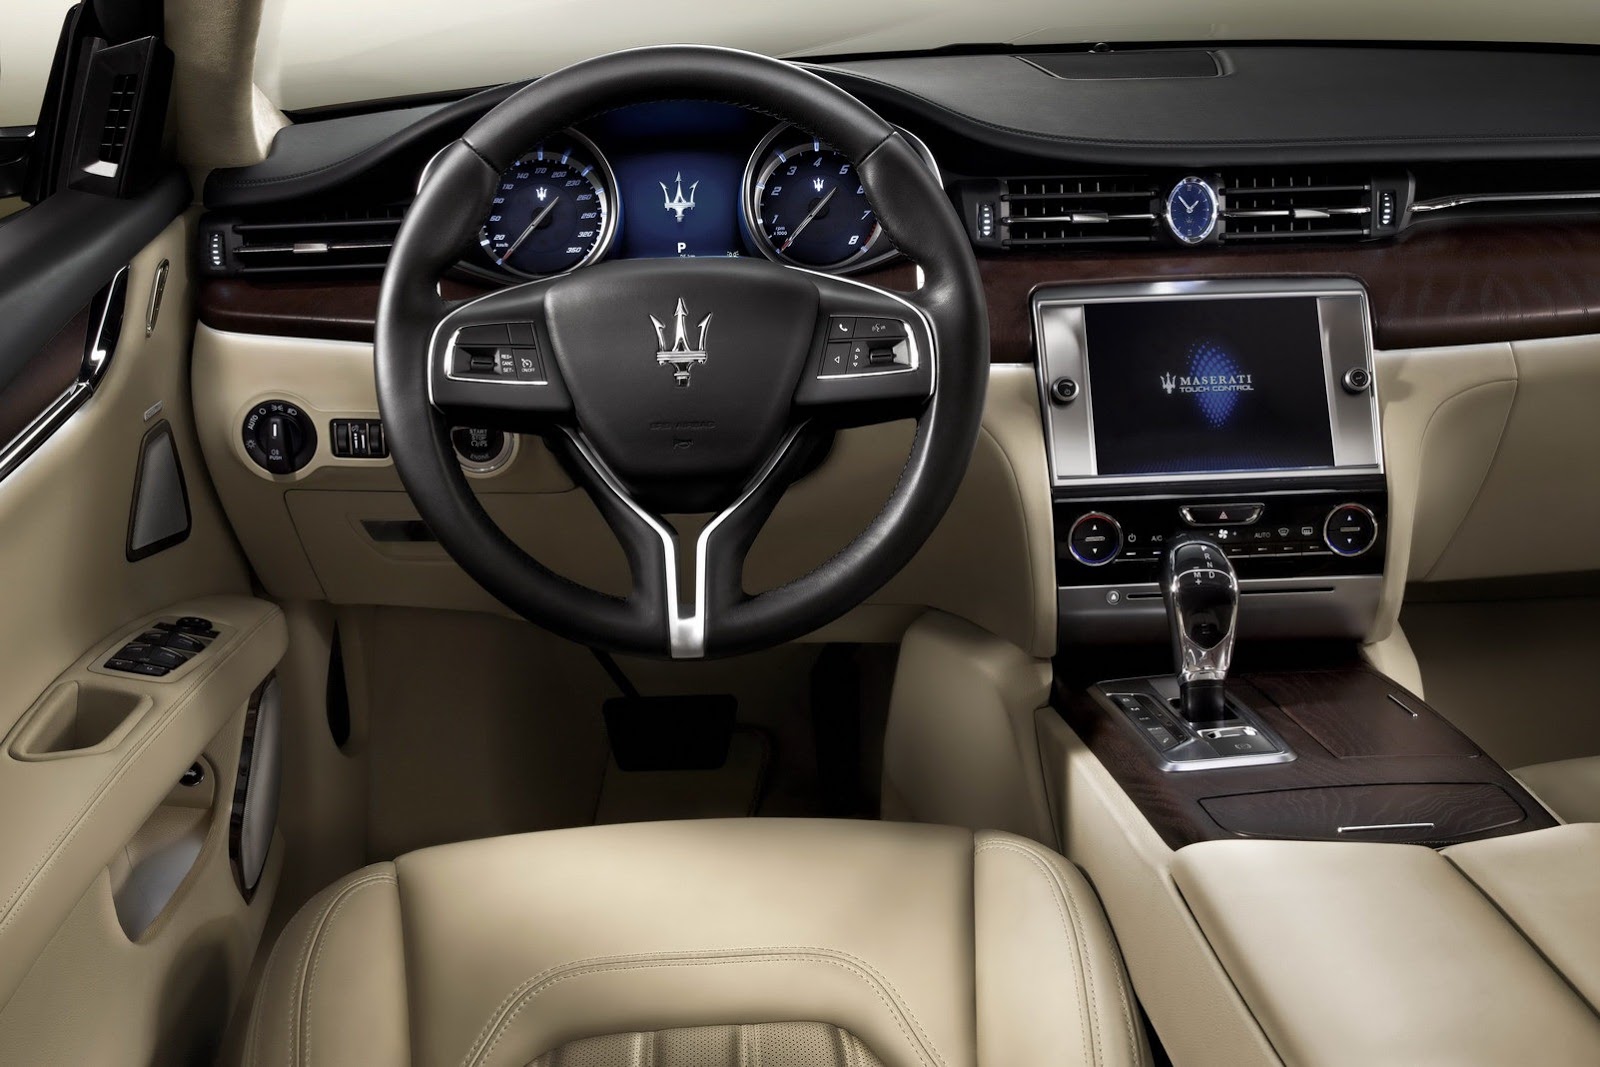 2014 Maserati Quattroporte